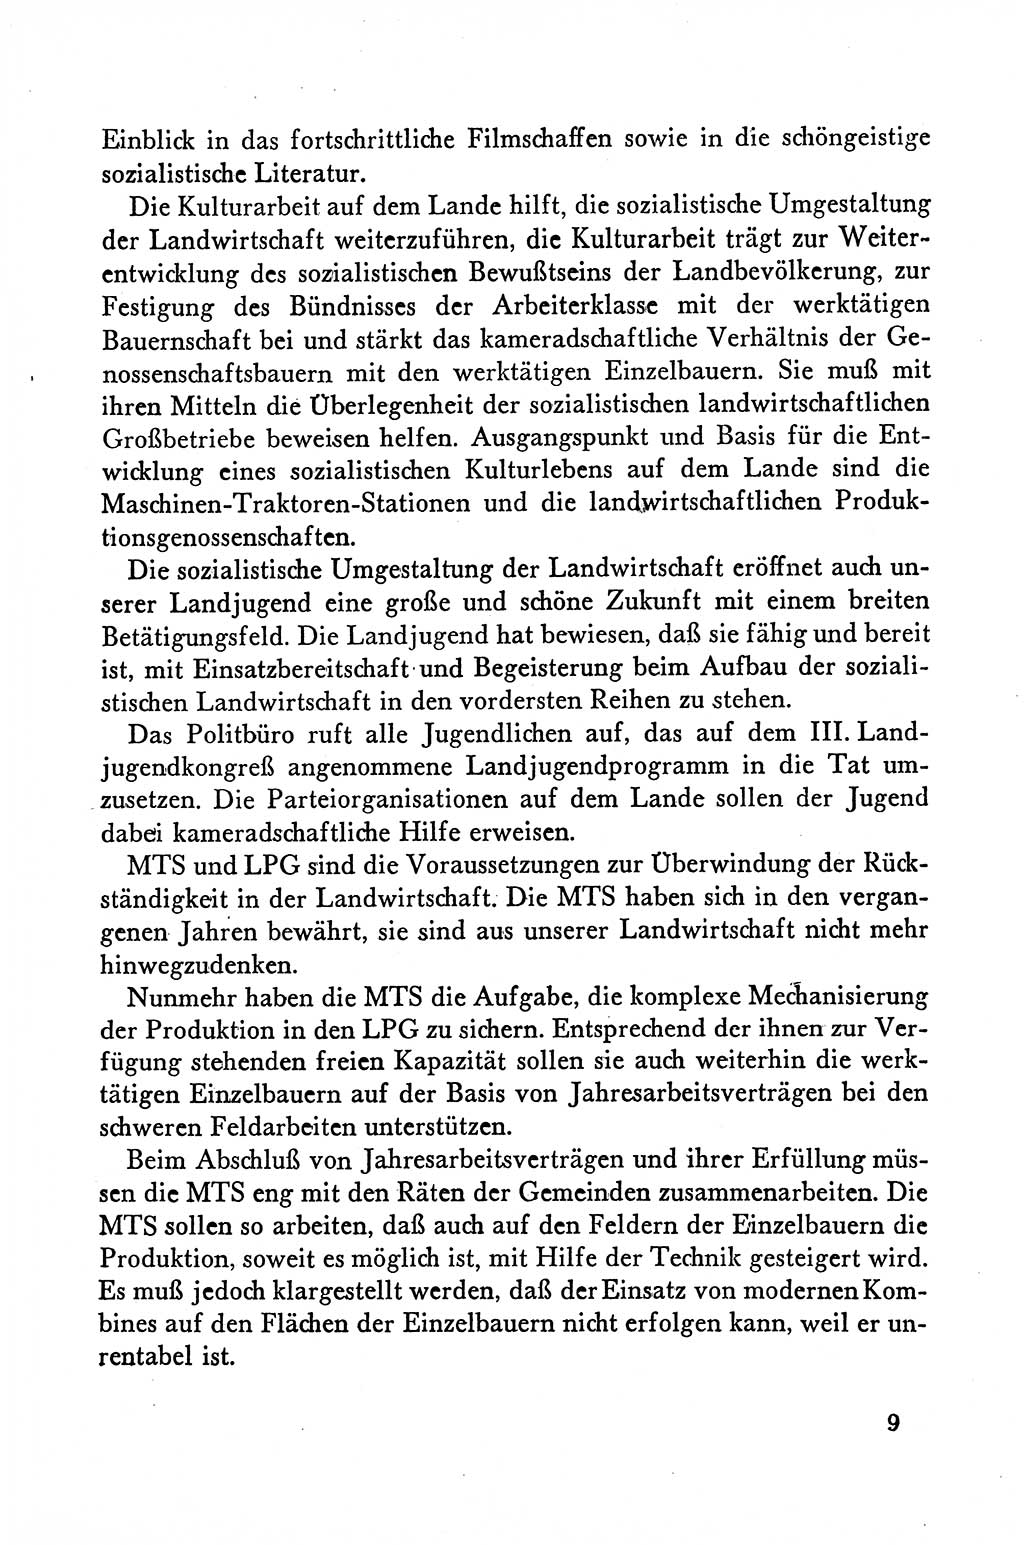 Dokumente der Sozialistischen Einheitspartei Deutschlands (SED) [Deutsche Demokratische Republik (DDR)] 1958-1959, Seite 9 (Dok. SED DDR 1958-1959, S. 9)